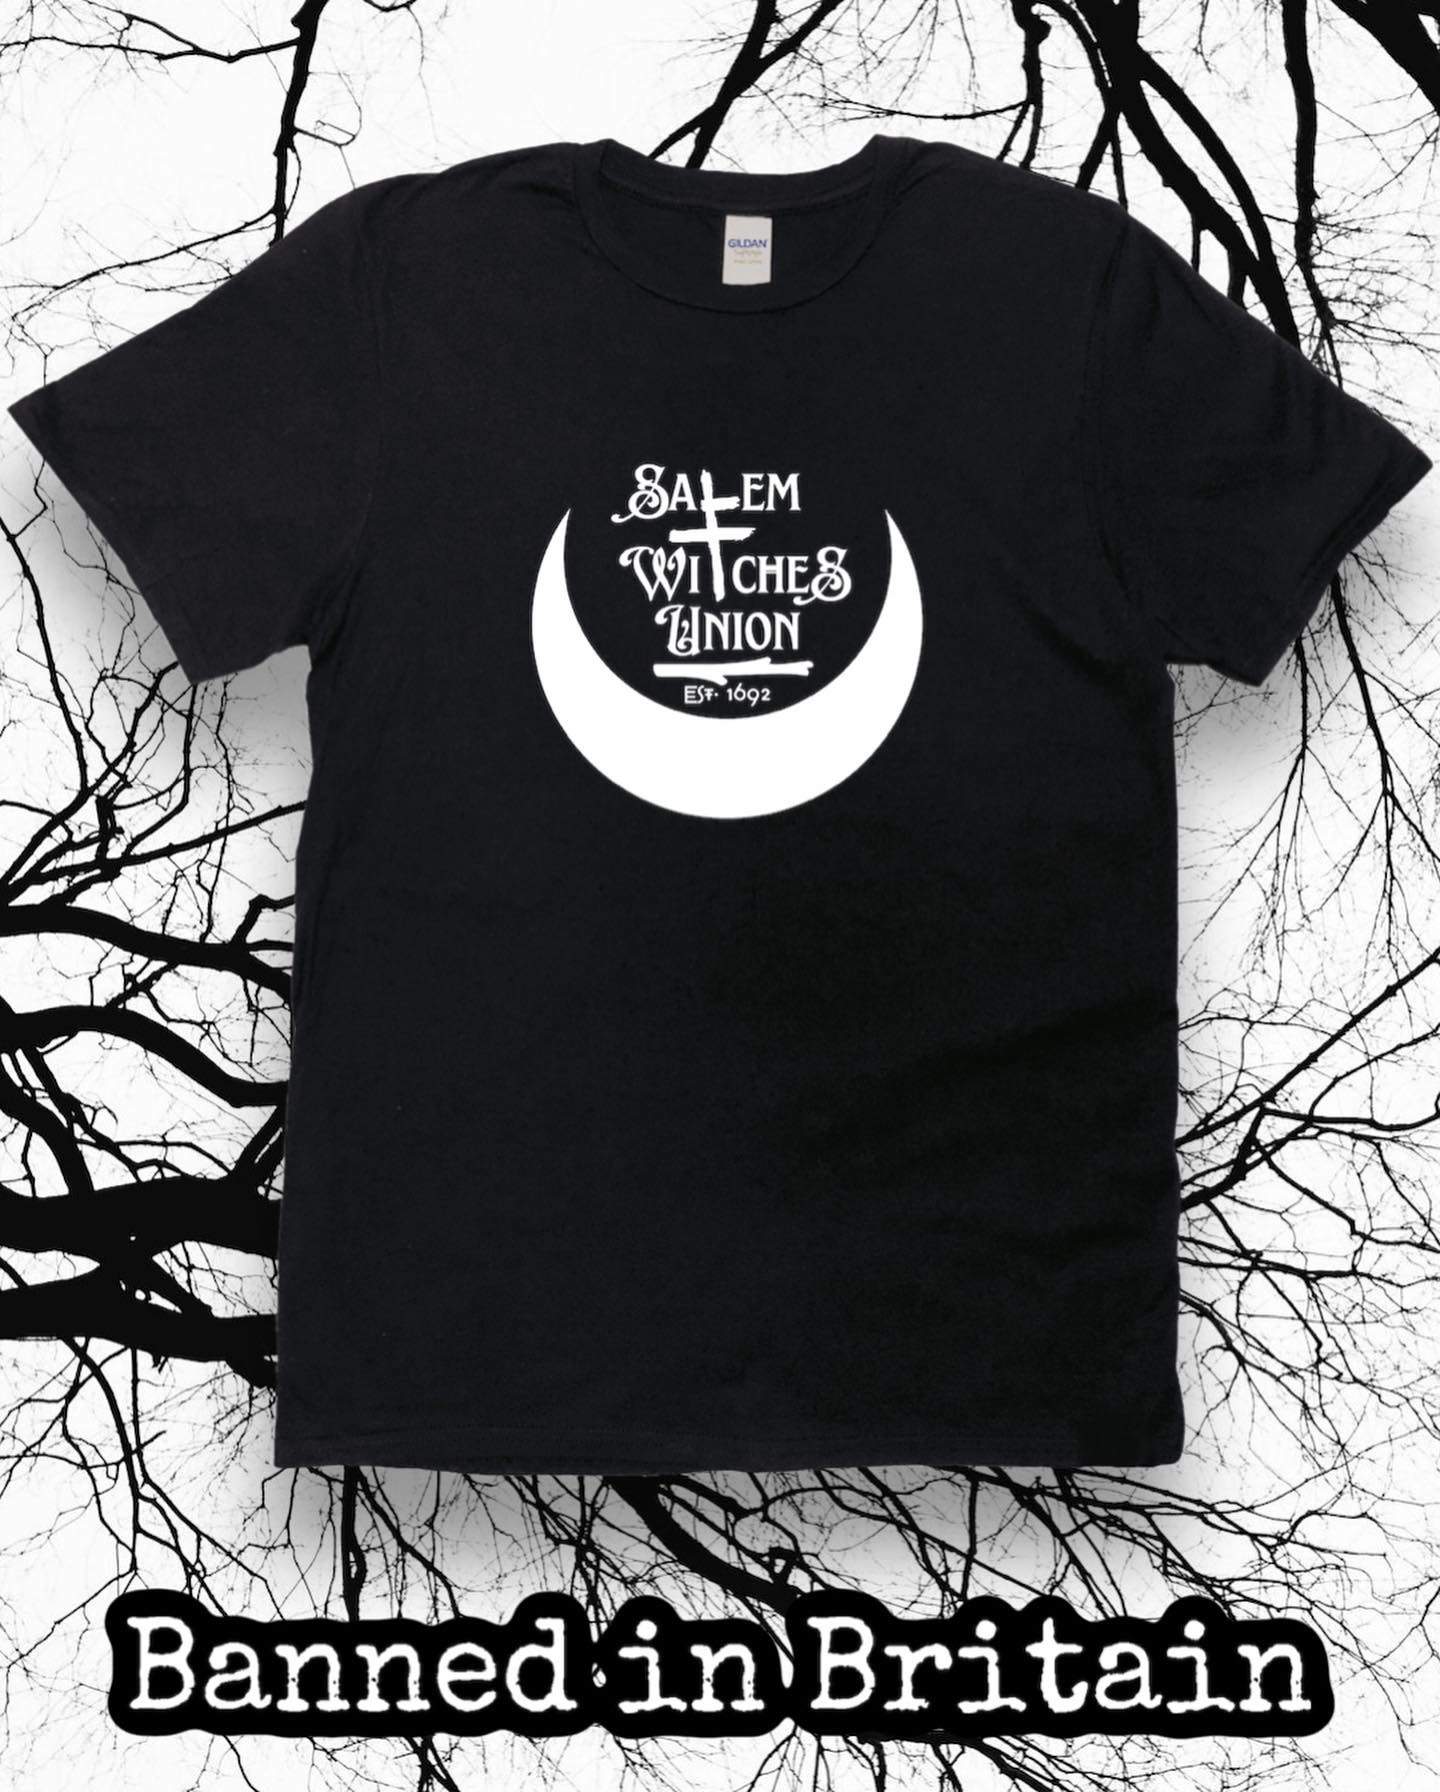 Salem Witches Union T-shirt